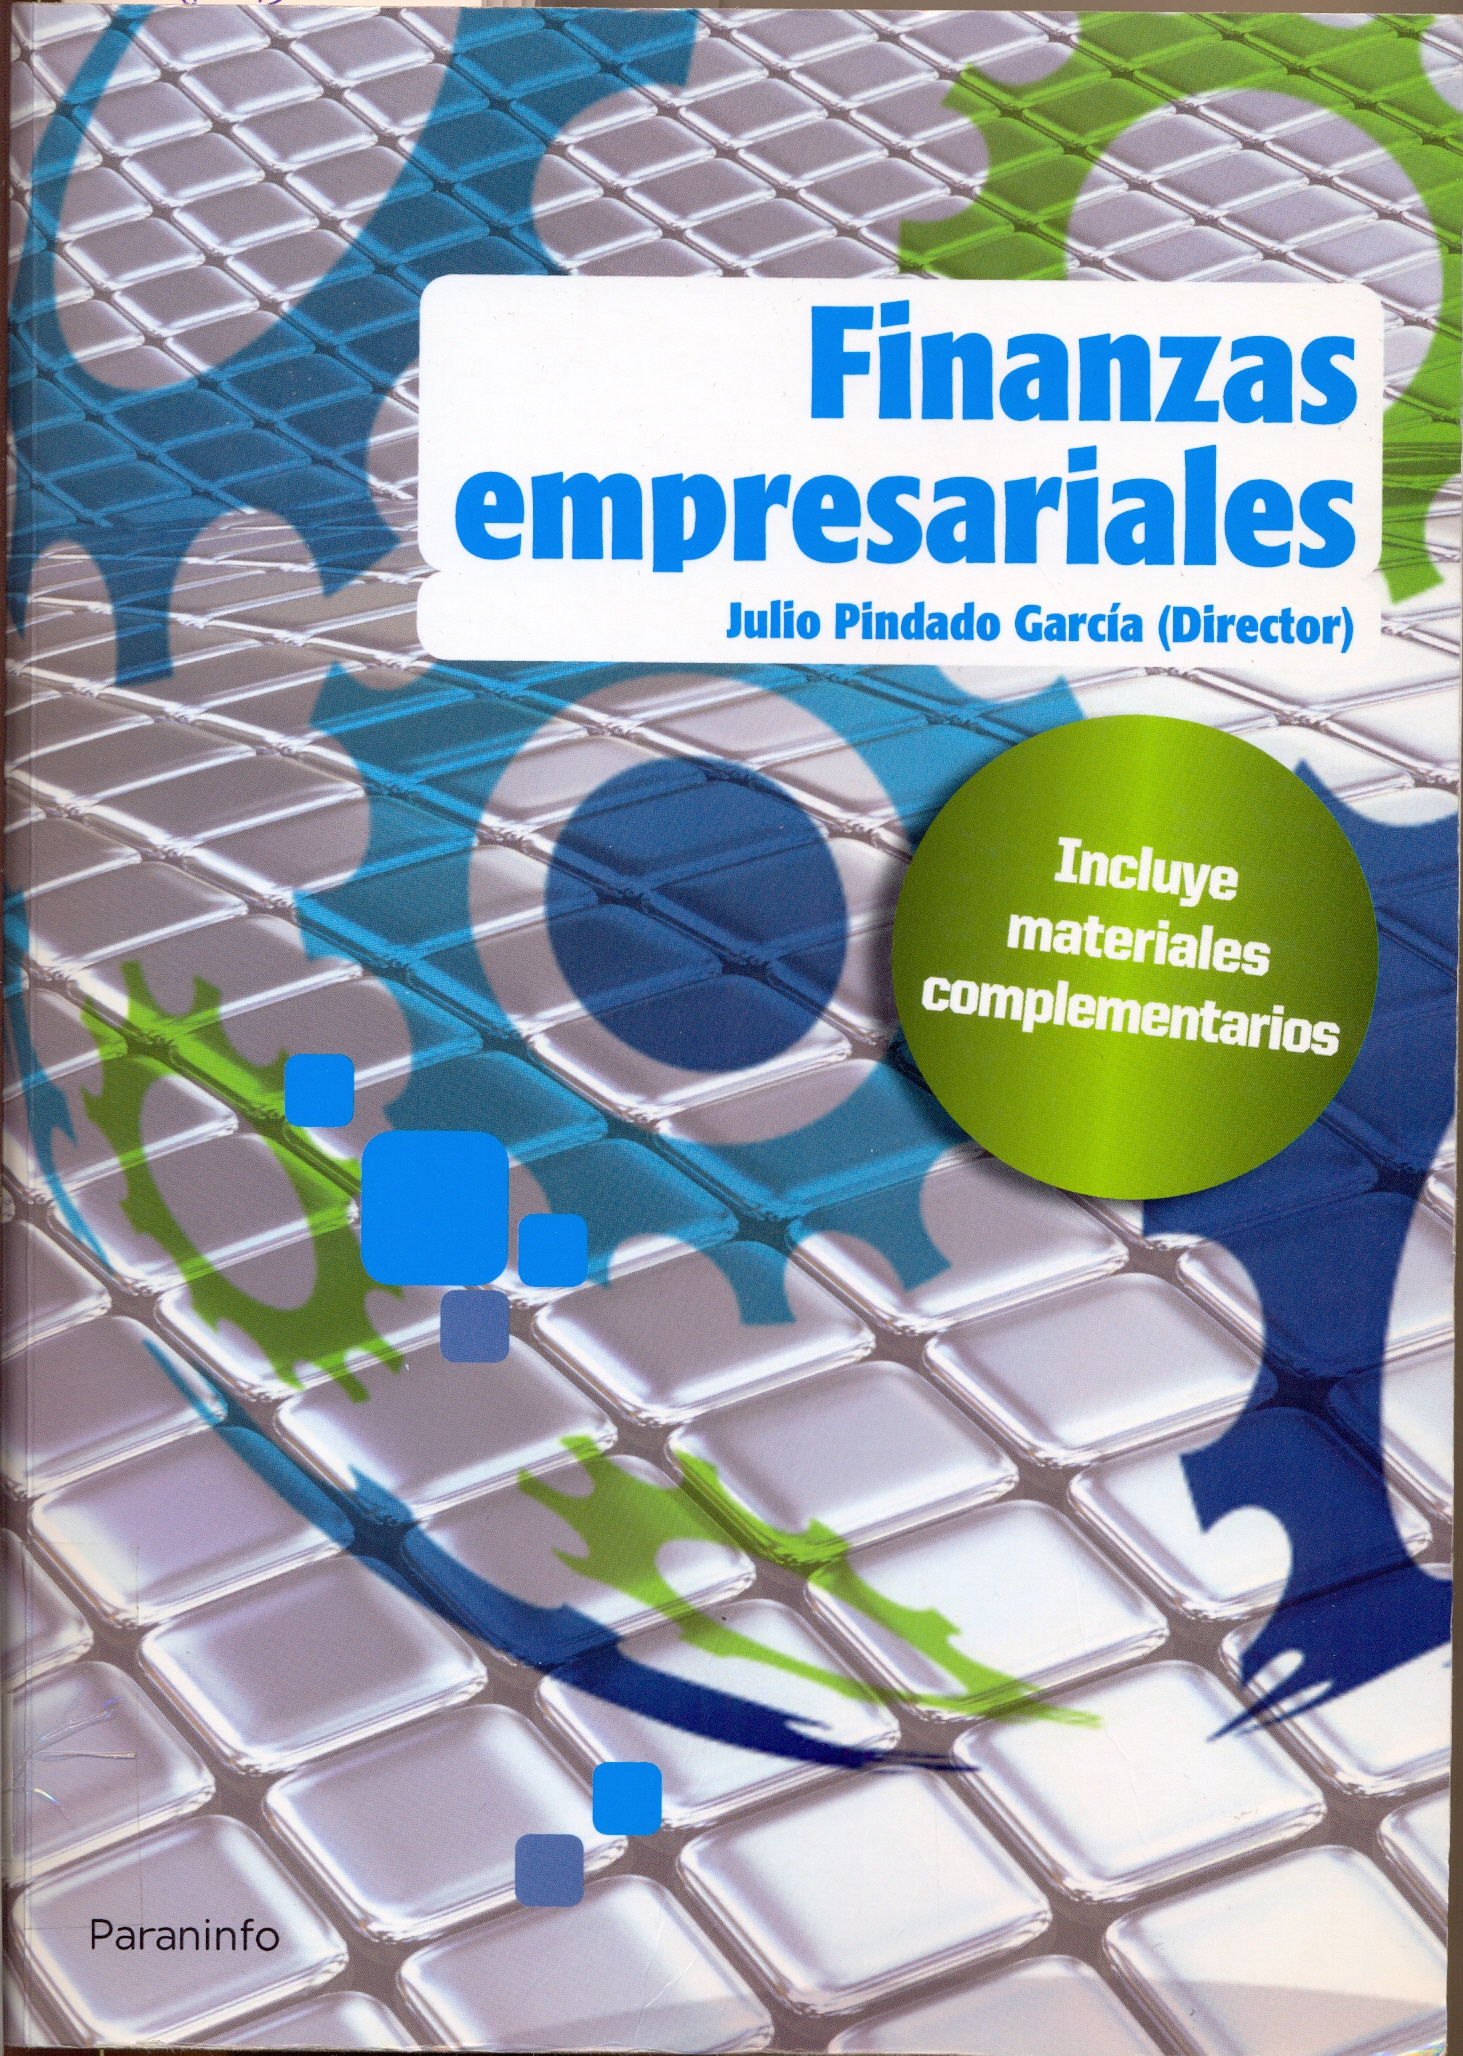 Imagen de portada del libro Finanzas empresariales